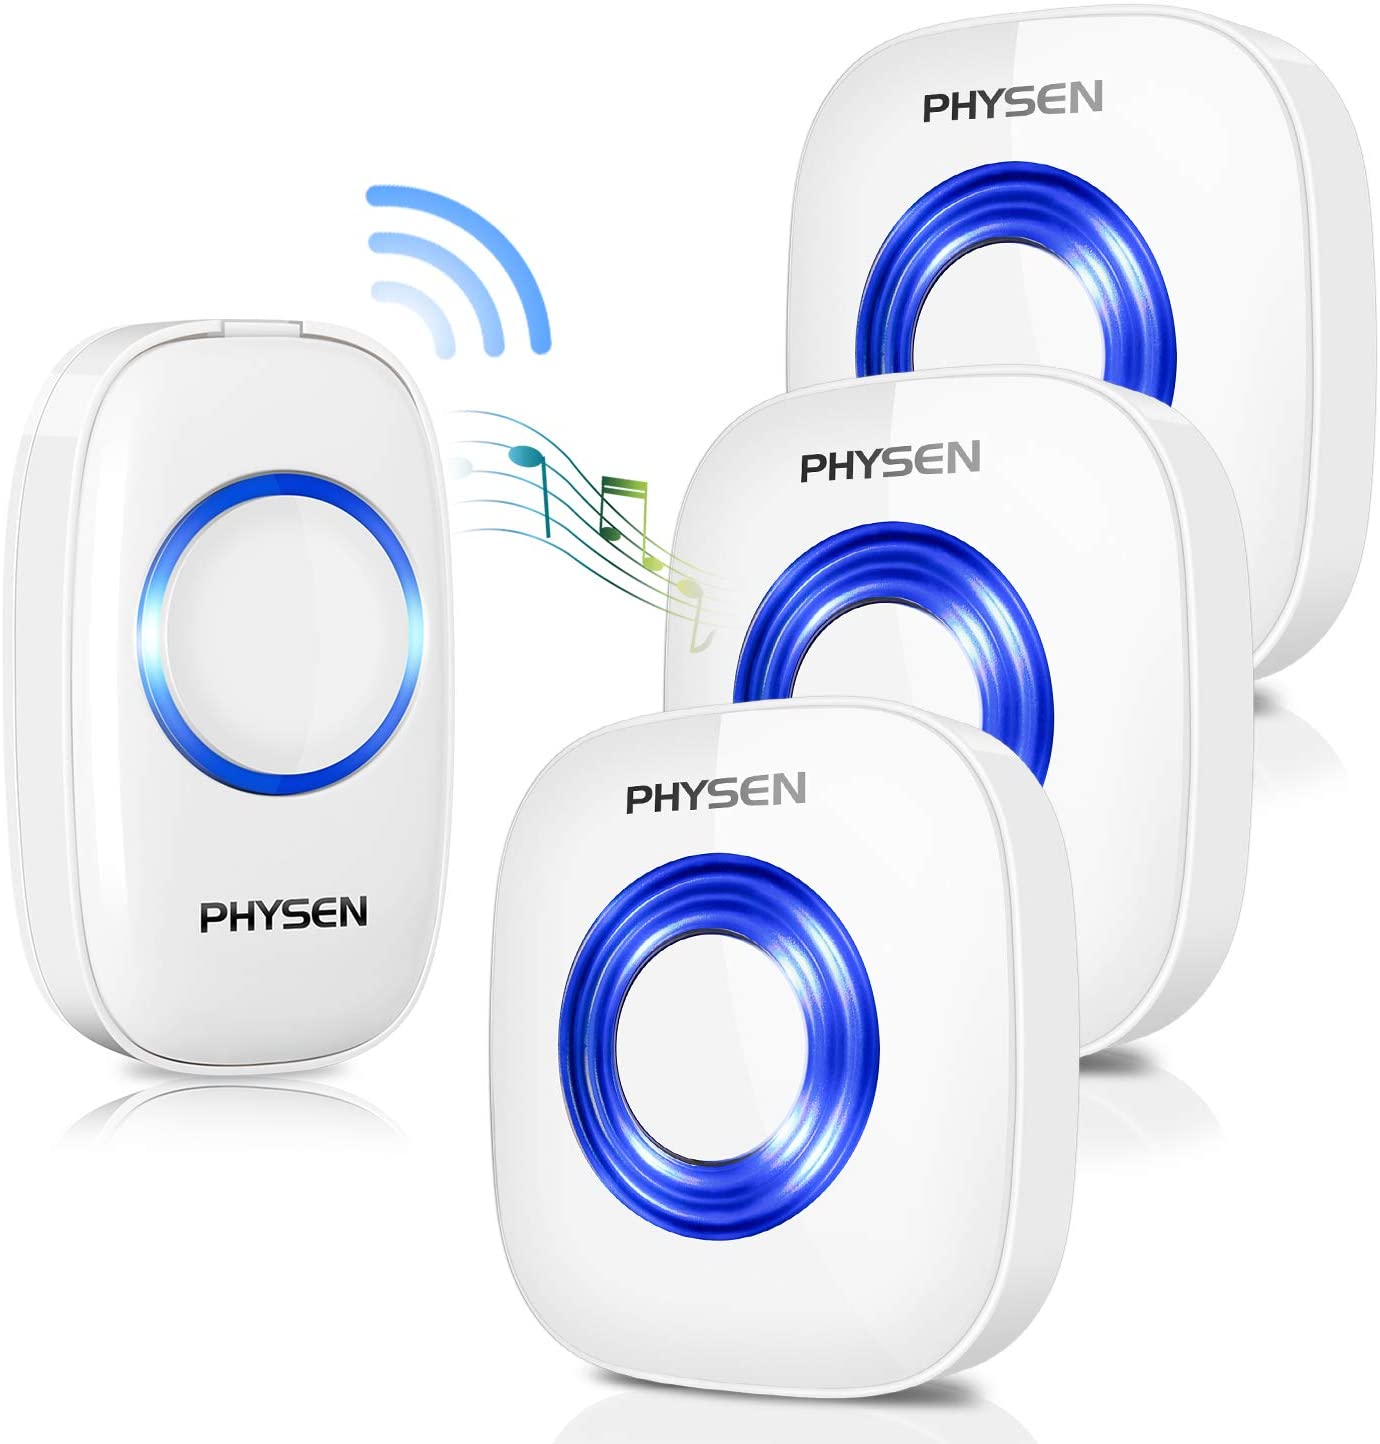 PHYSEN Wireless Doorbell